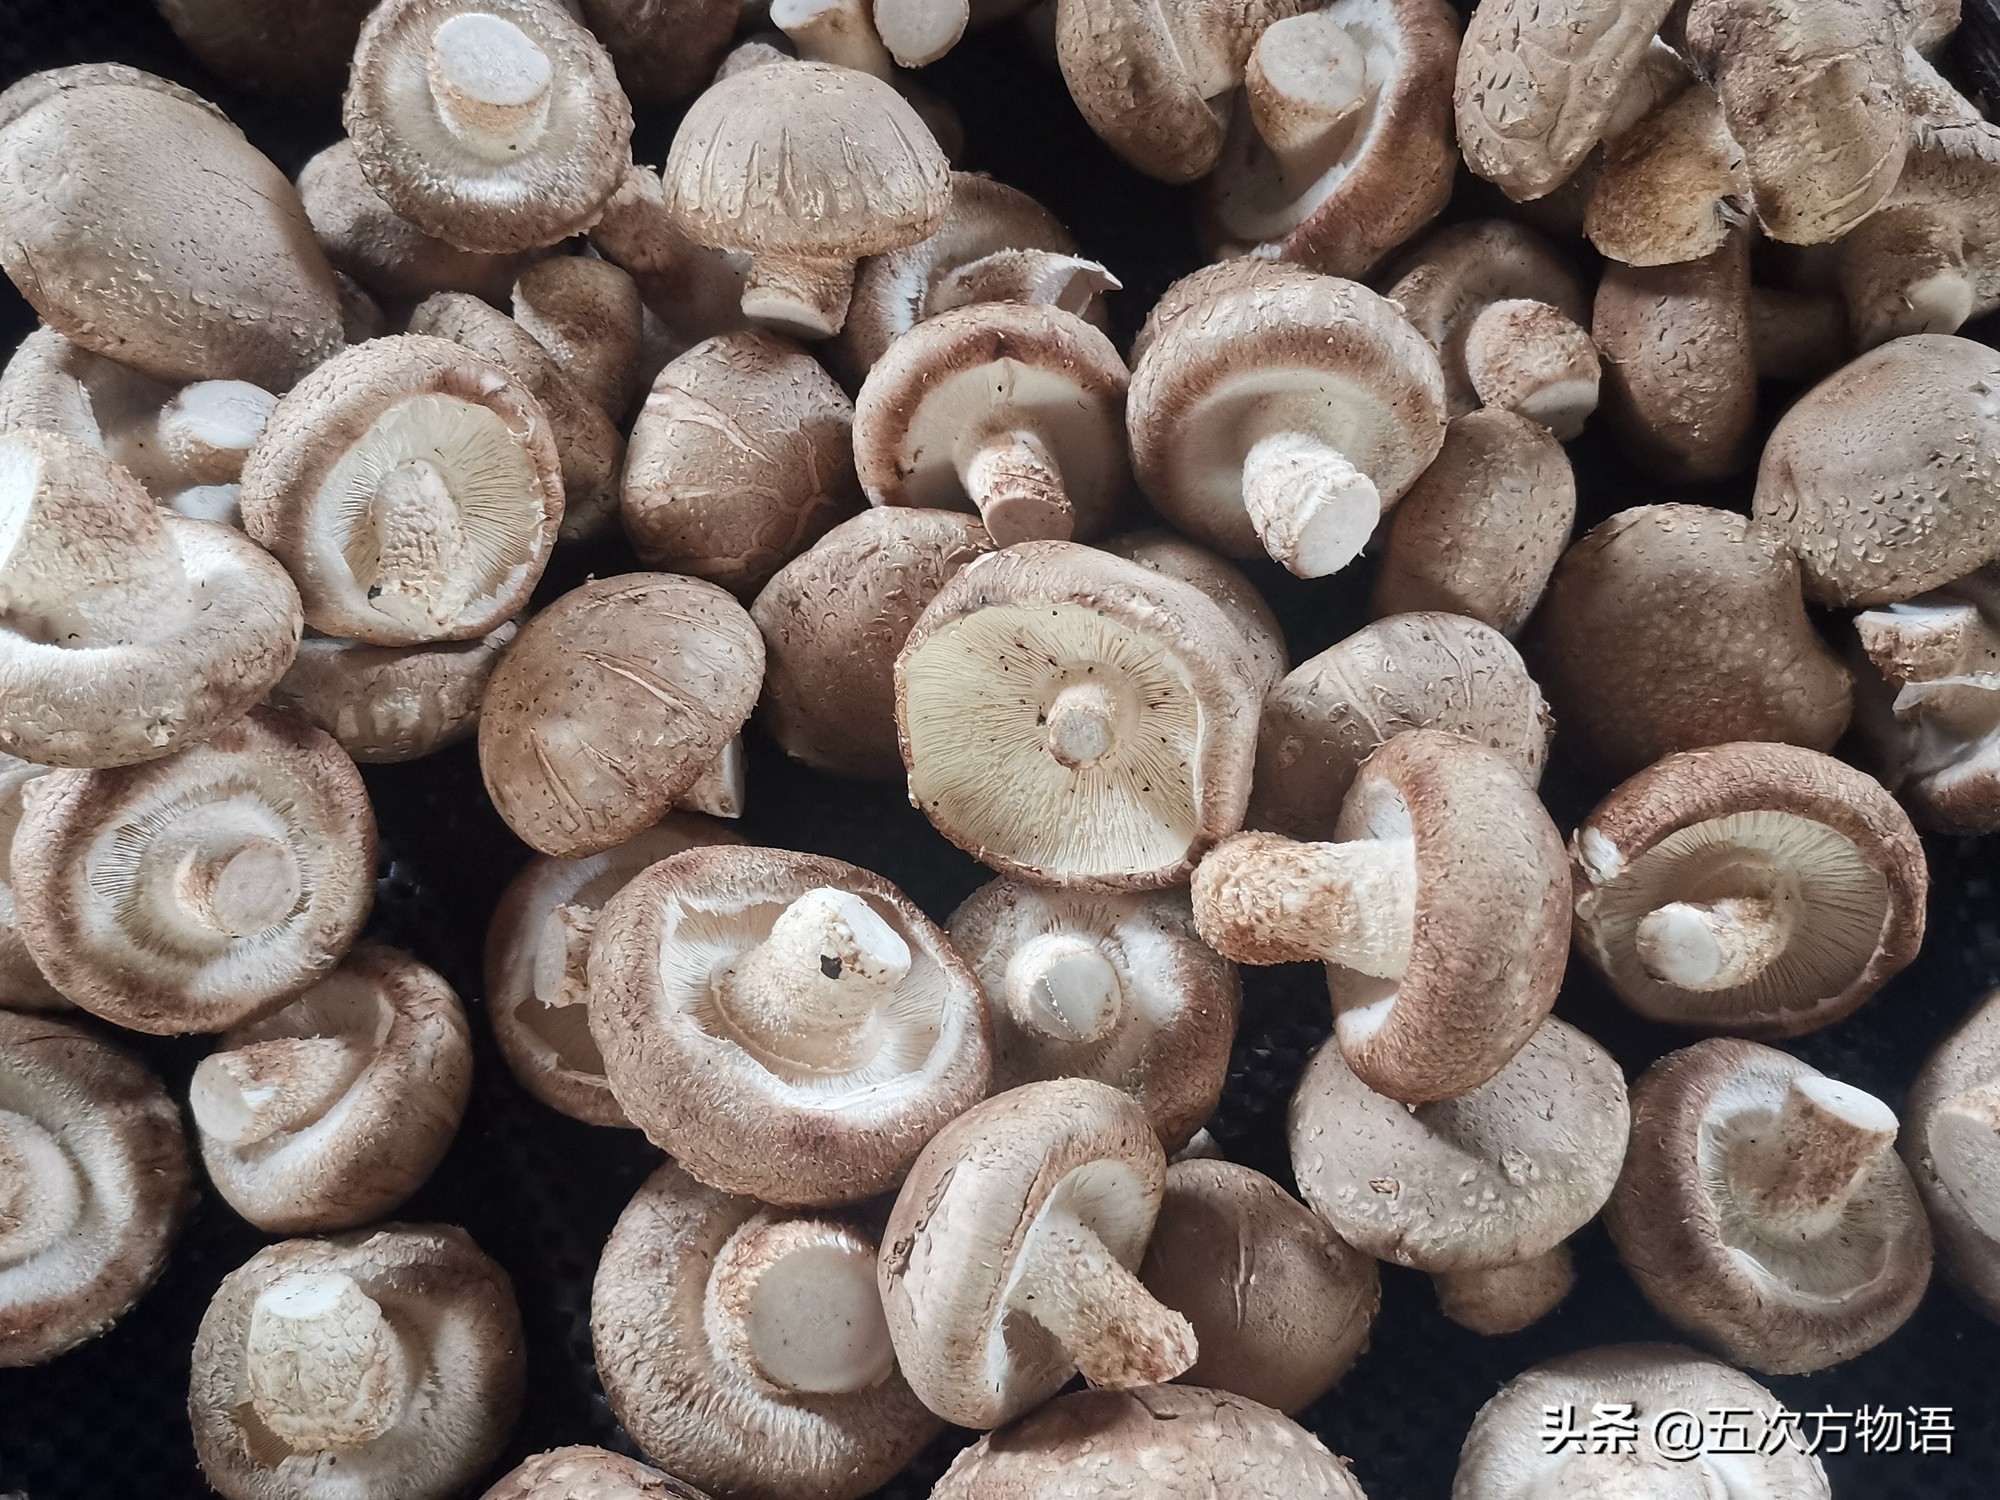 蘑菇种类大全及图片（23种菜市场常见菌菇）